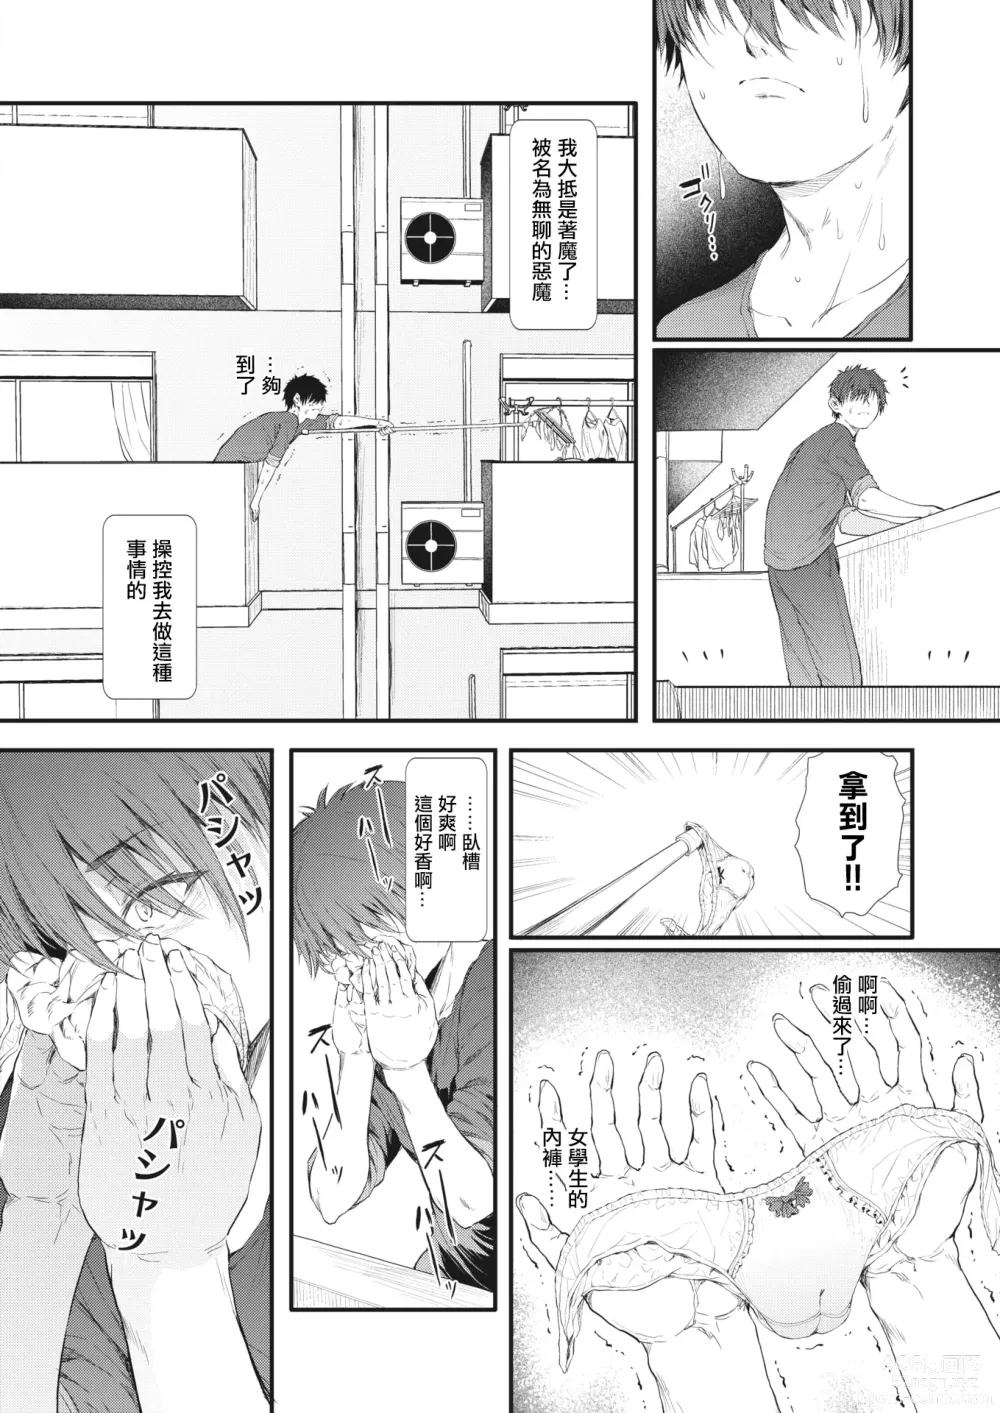 Page 4 of manga Totte Torarete  Shirokuro Gal  Shimai